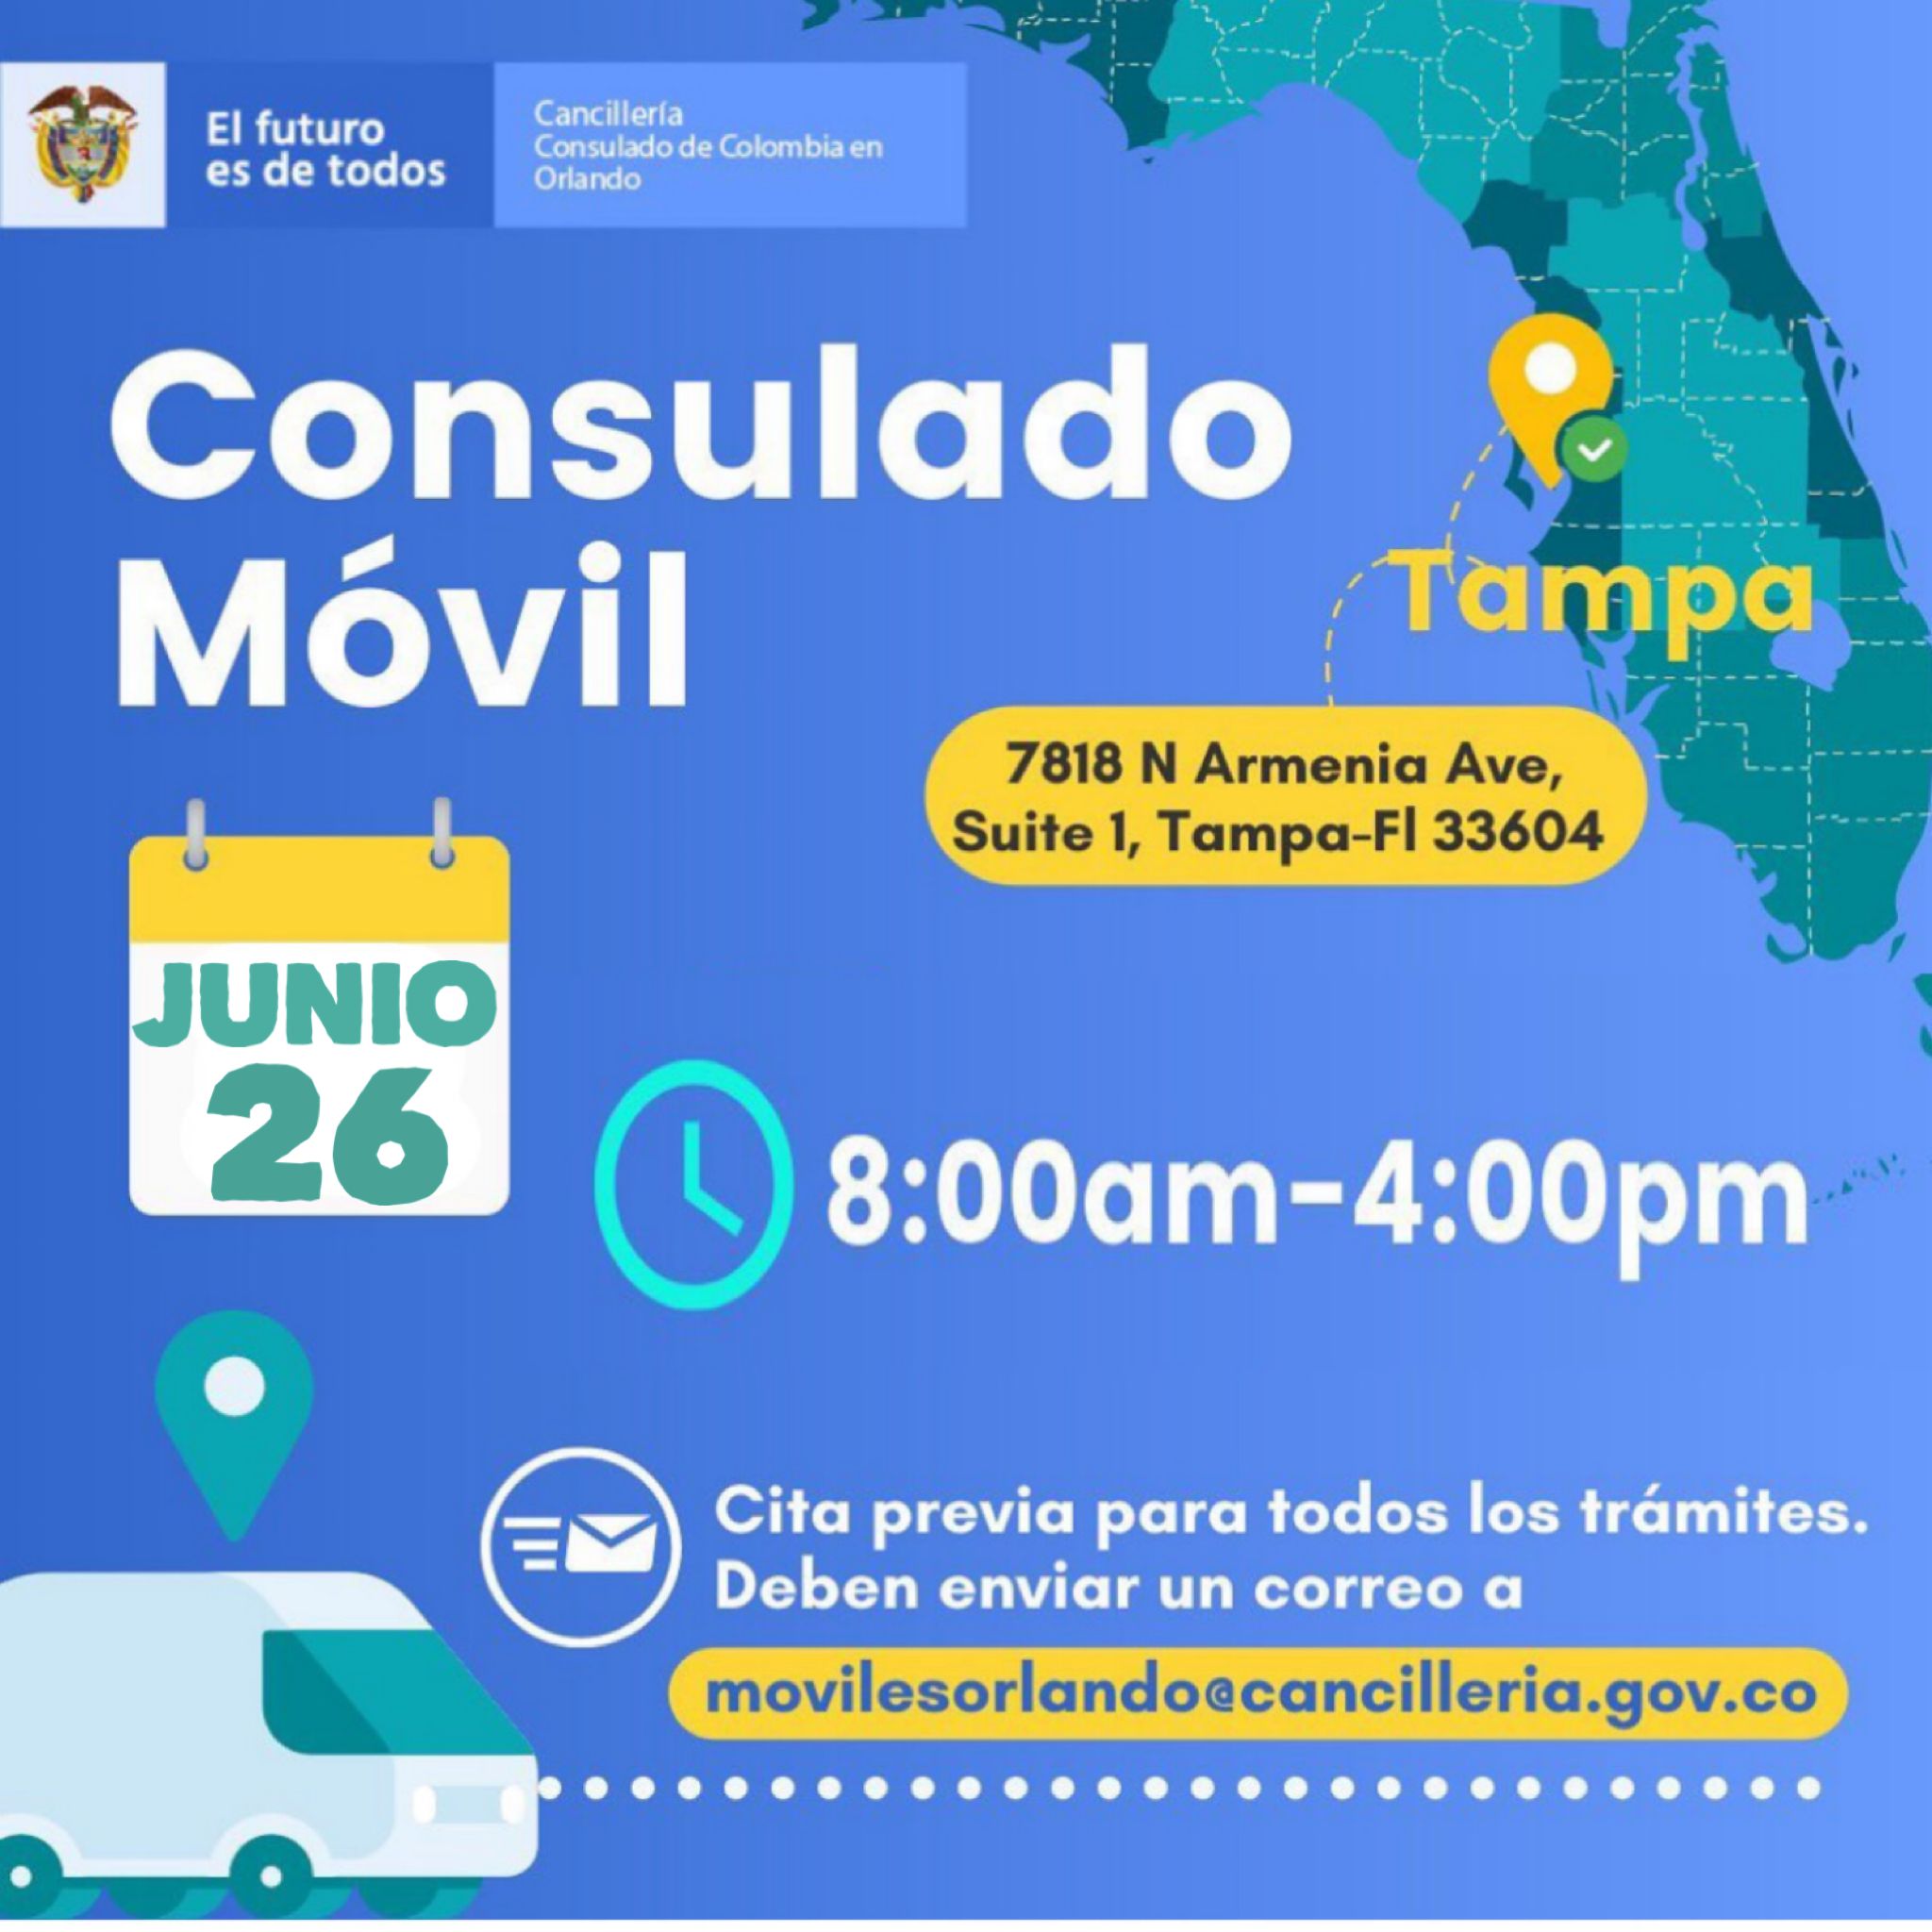 La jornada de Consulado Móvil en Tampa se realizará el 26 de junio 